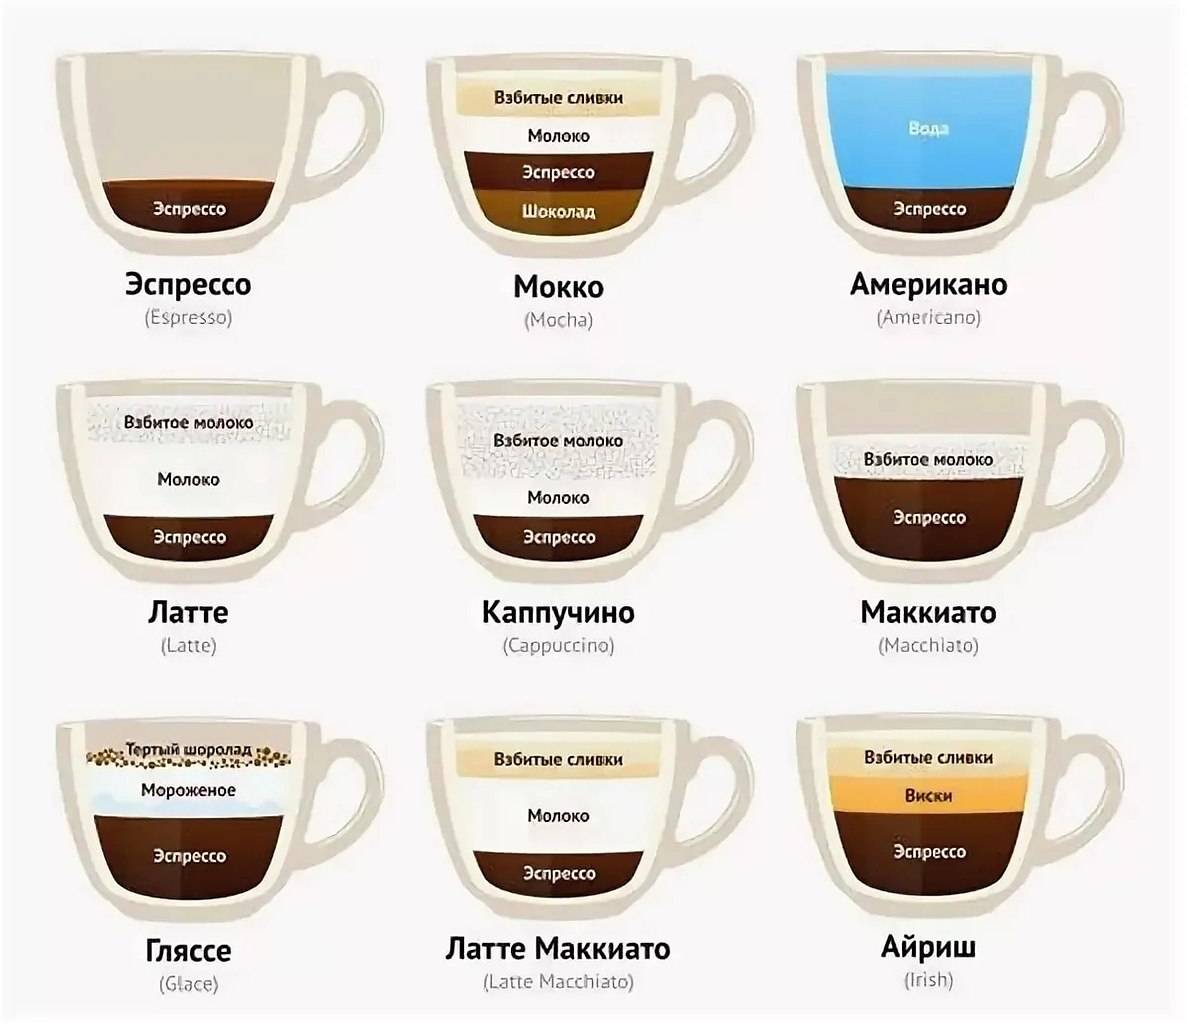 Чем отличается гляссе от латте и других кофейных напитков